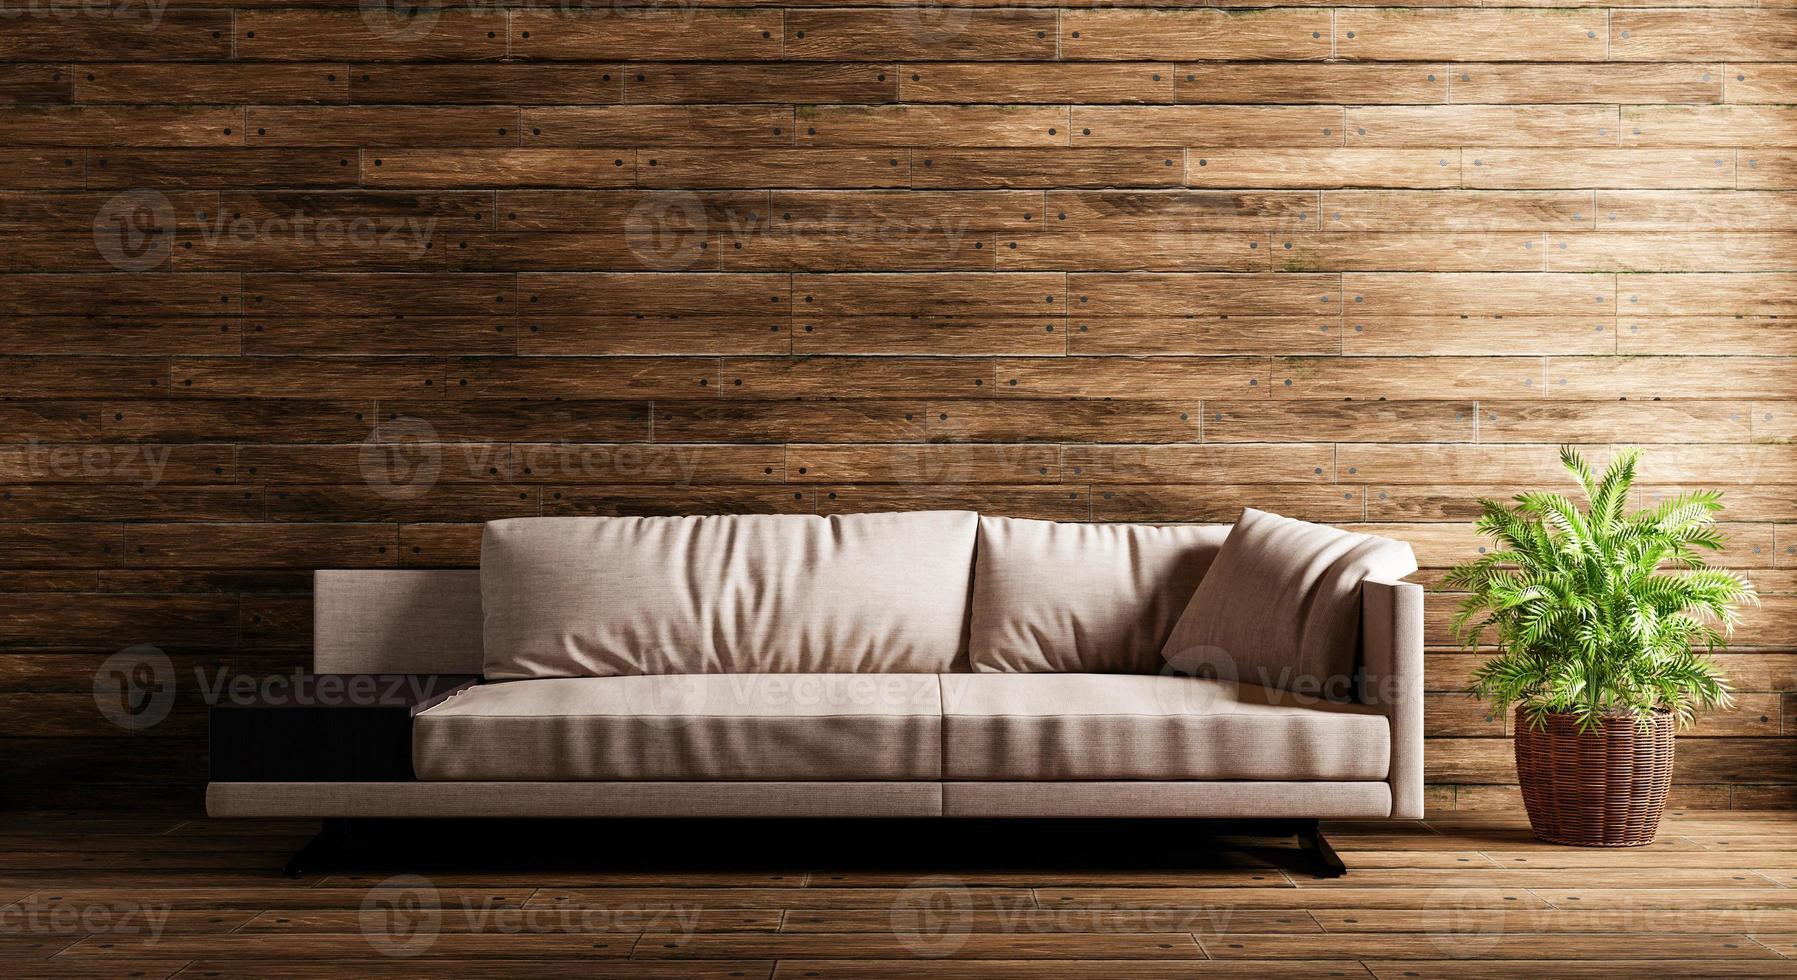 acogedor sofá beige en el fondo de una casa de madera con planta. arquitectura y concepto interior. representación de ilustración 3d foto